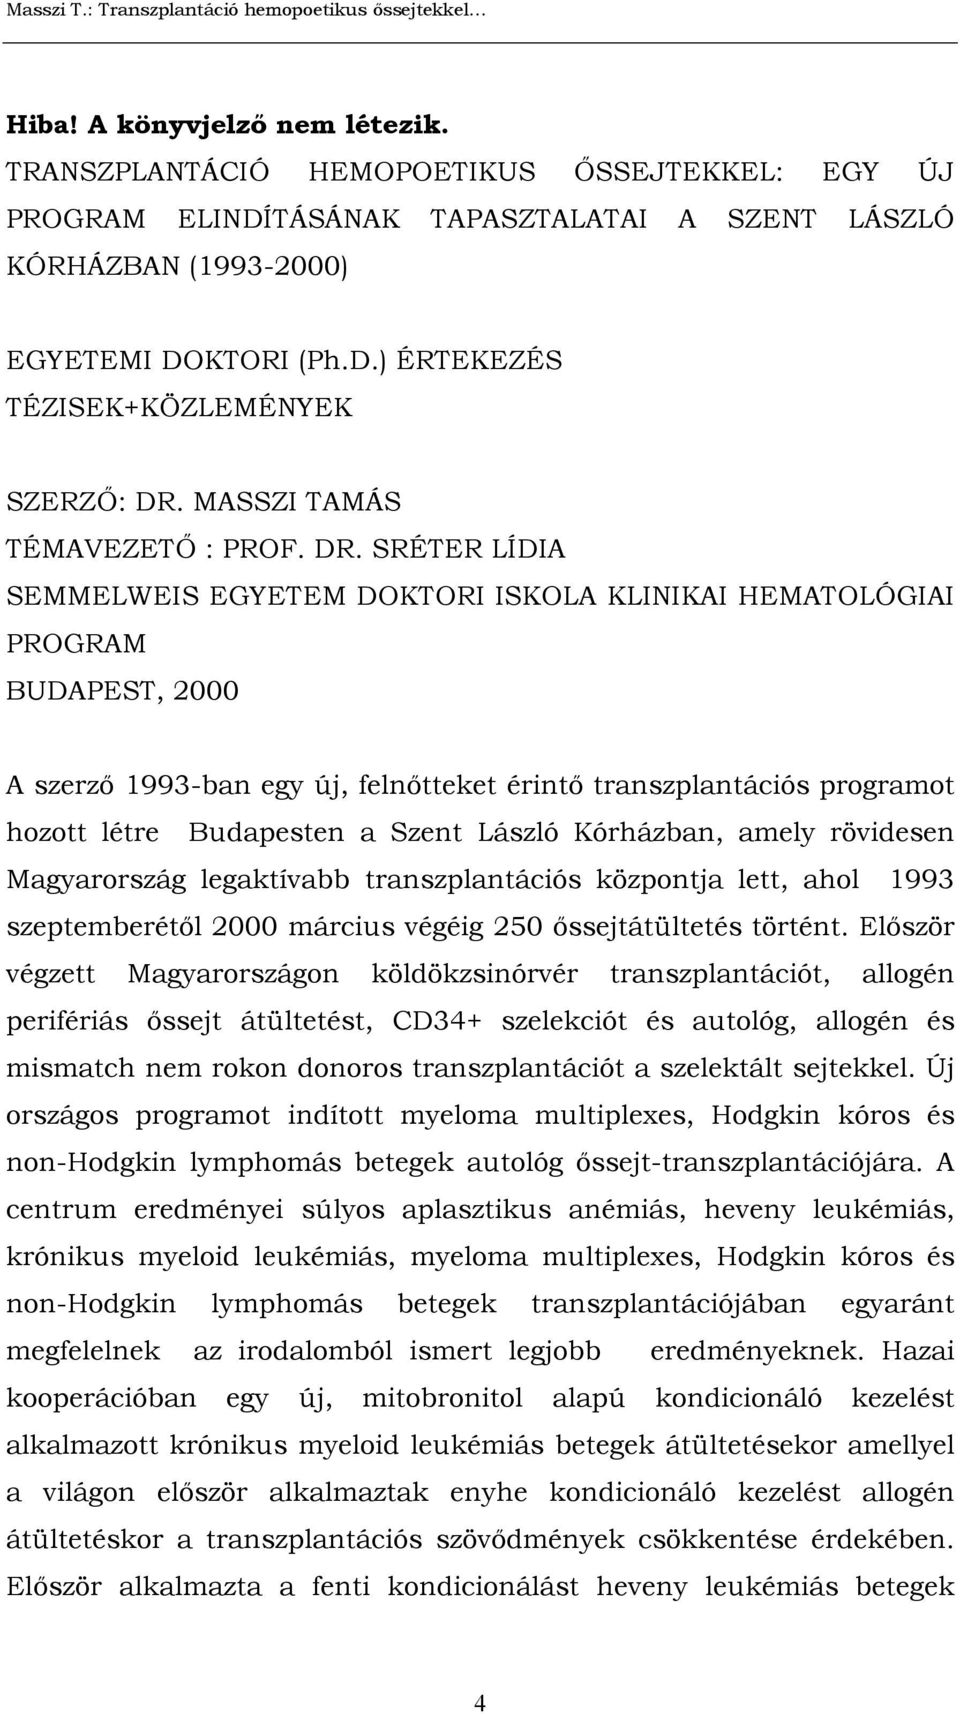 SRÉTER LÍDIA SEMMELWEIS EGYETEM DOKTORI ISKOLA KLINIKAI HEMATOLÓGIAI PROGRAM BUDAPEST, 2000 A szerző 1993-ban egy új, felnőtteket érintő transzplantációs programot hozott létre Budapesten a Szent